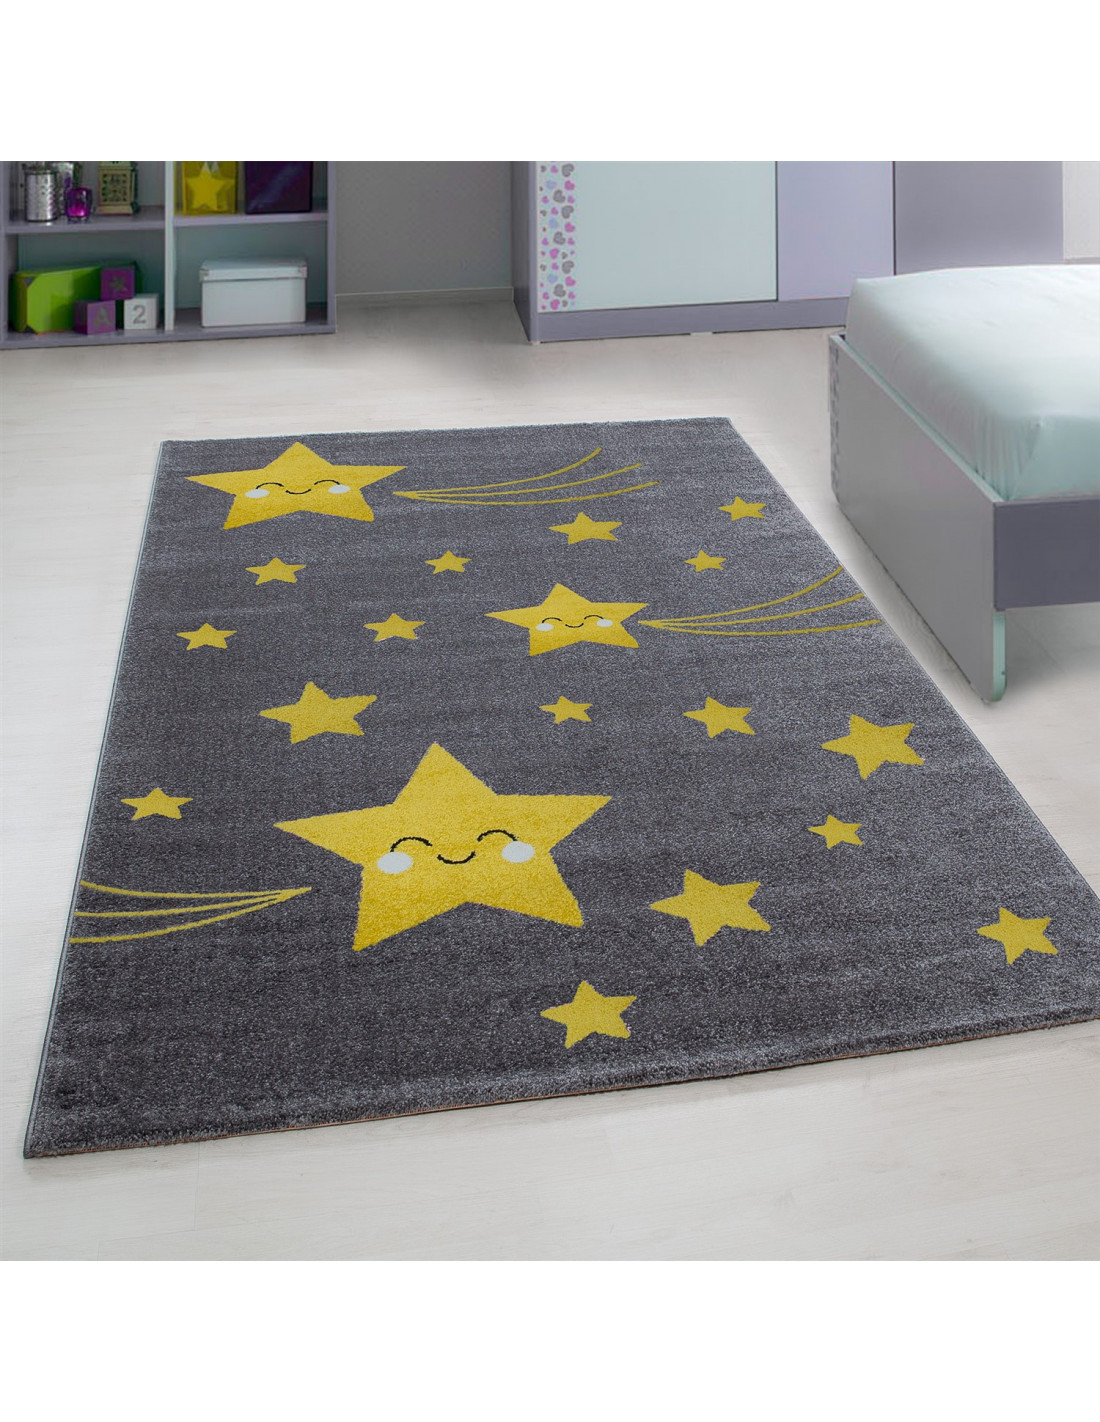 Dywan do pokoju dziecięcego z motywami żółtej gwiazdy